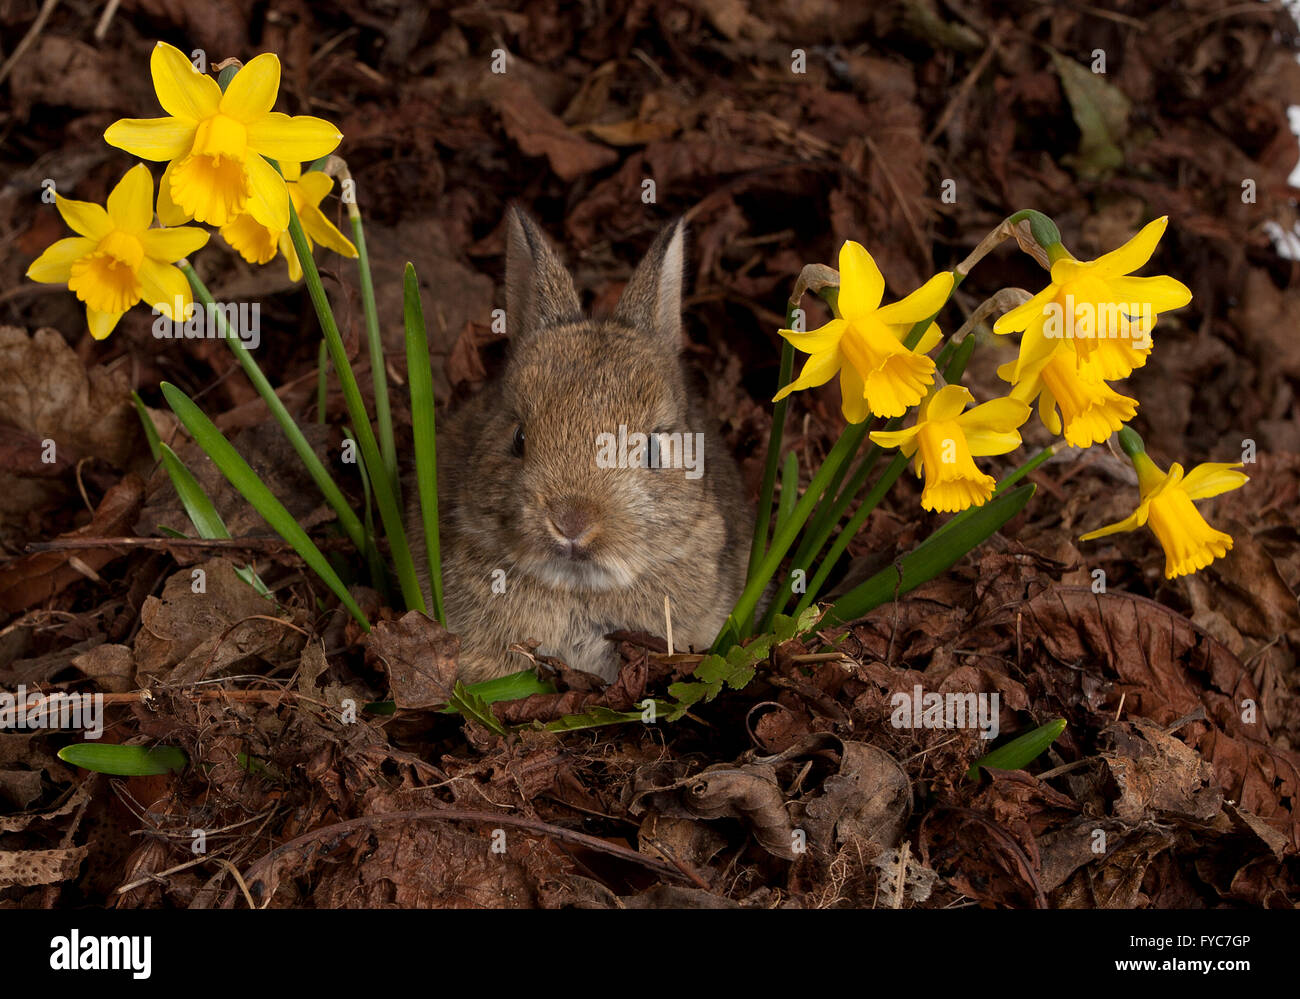 Baby Europäische Kaninchen, Oryctolagus Cuniculus, Narzissen und Blätter im studio Stockfoto